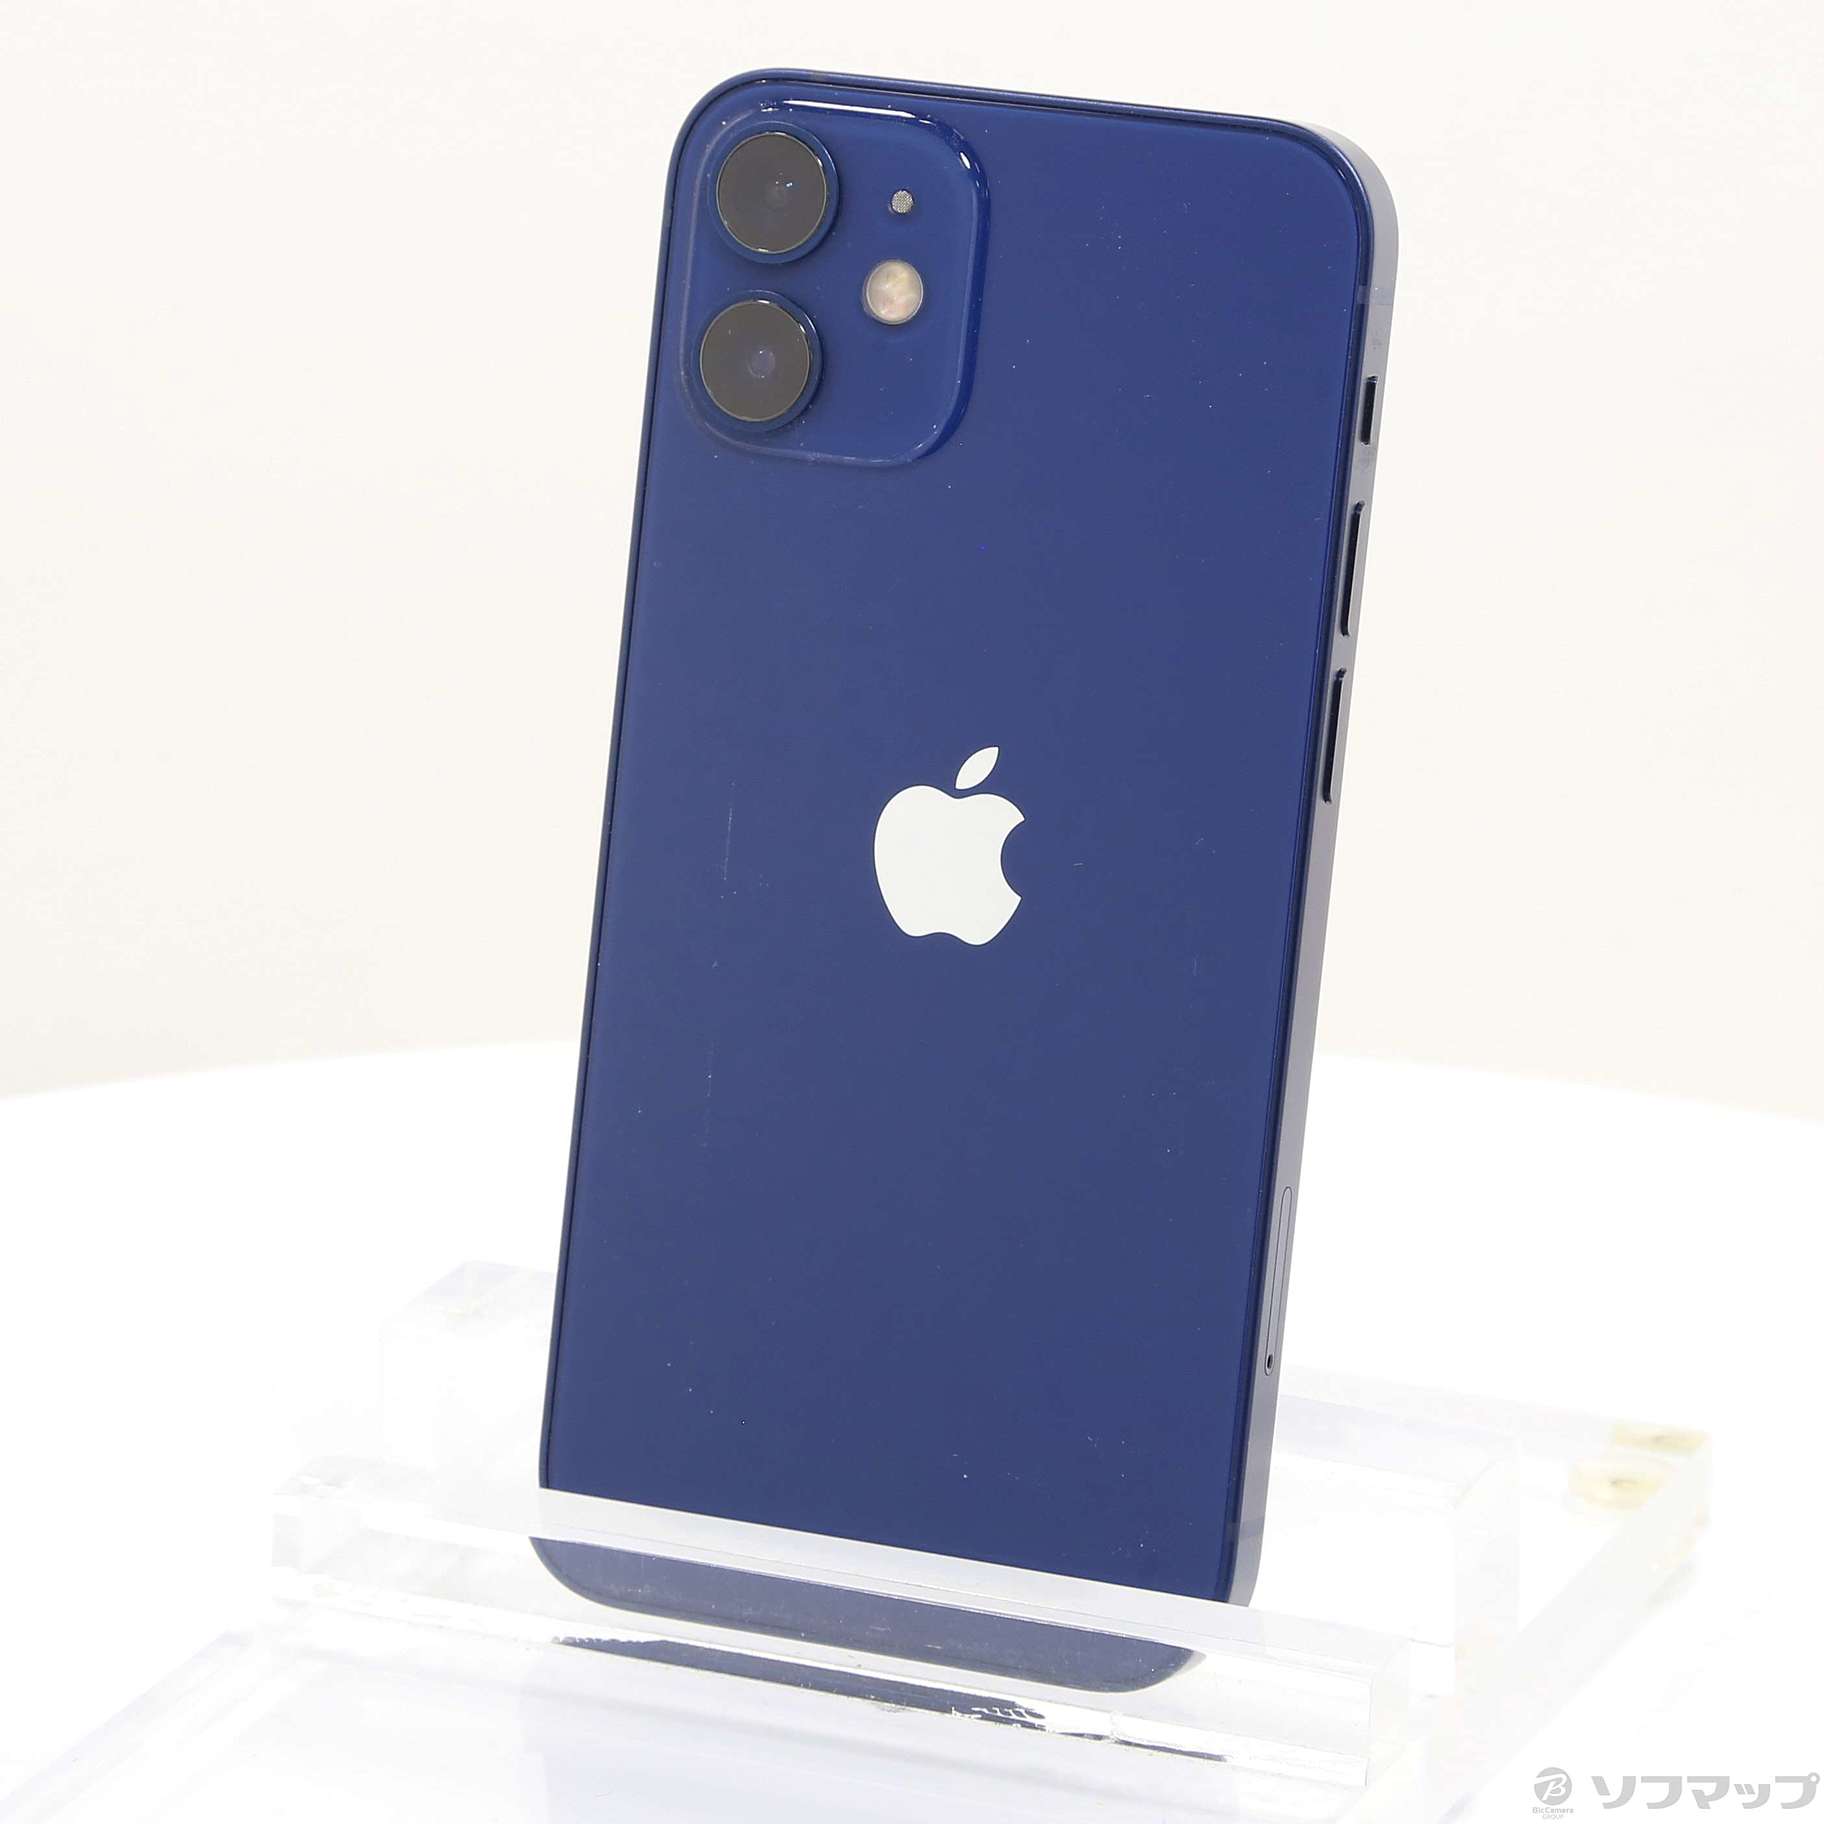 アップル iPhone12 mini 128GB ブルー